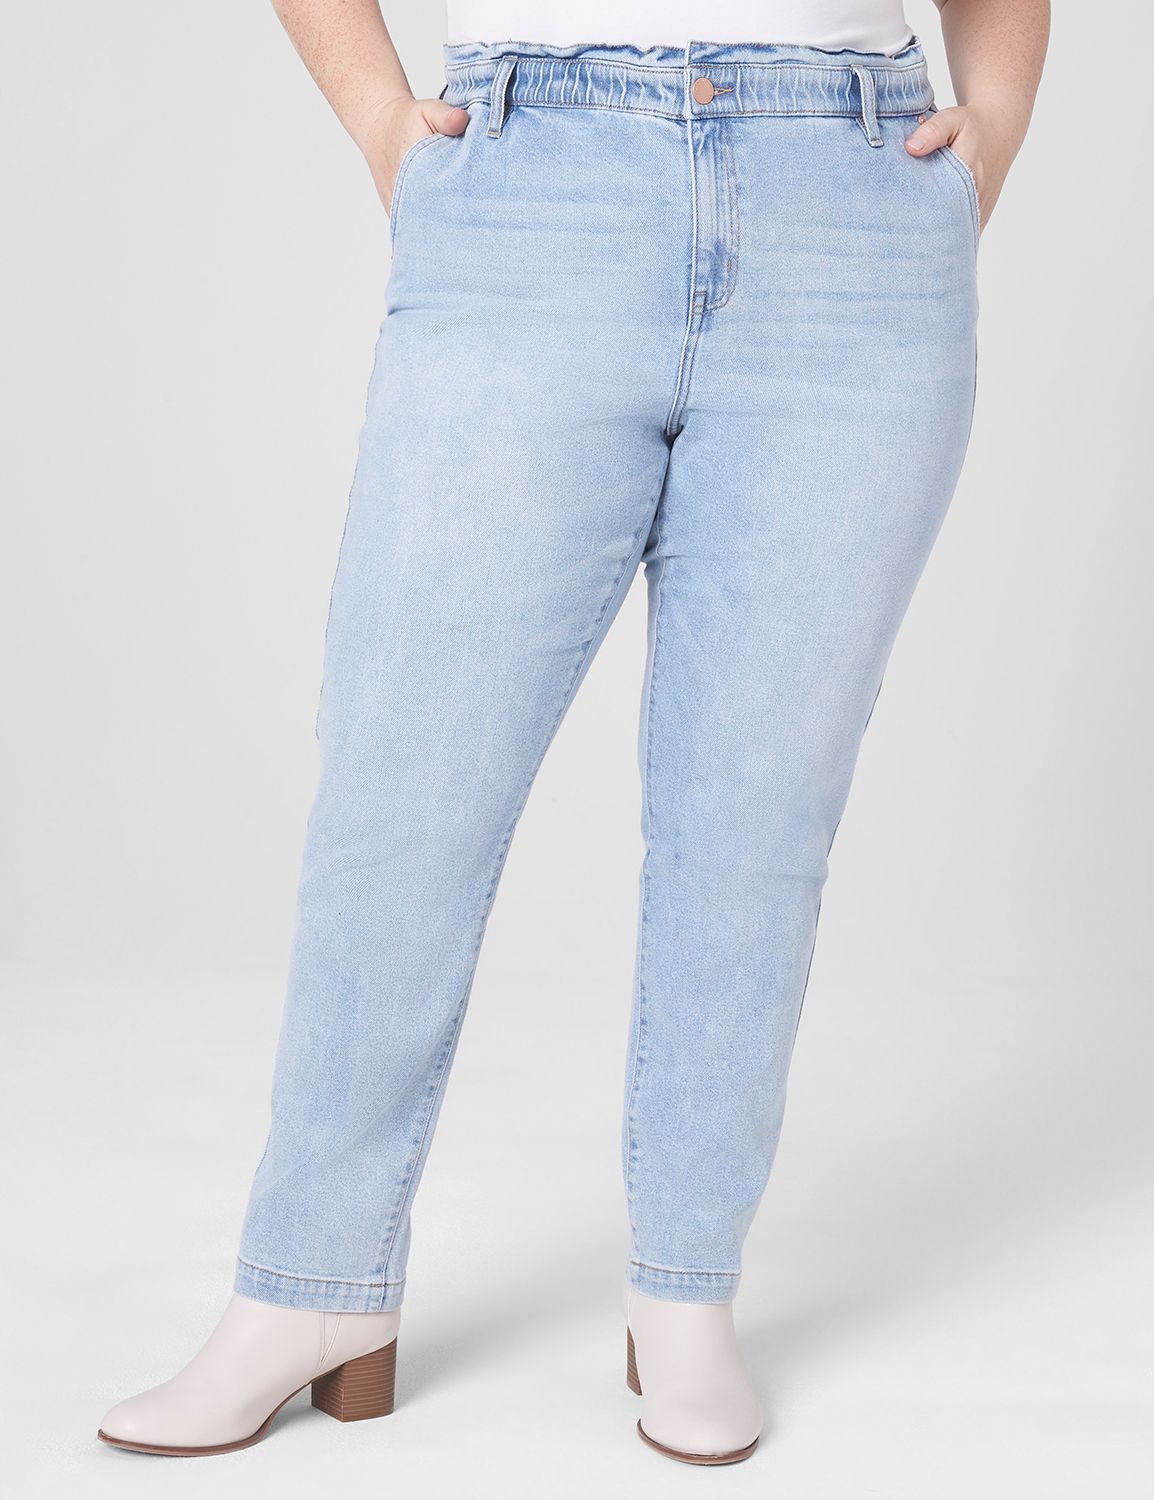 Women's Elastic Waist Jeans, Explore our New Arrivals